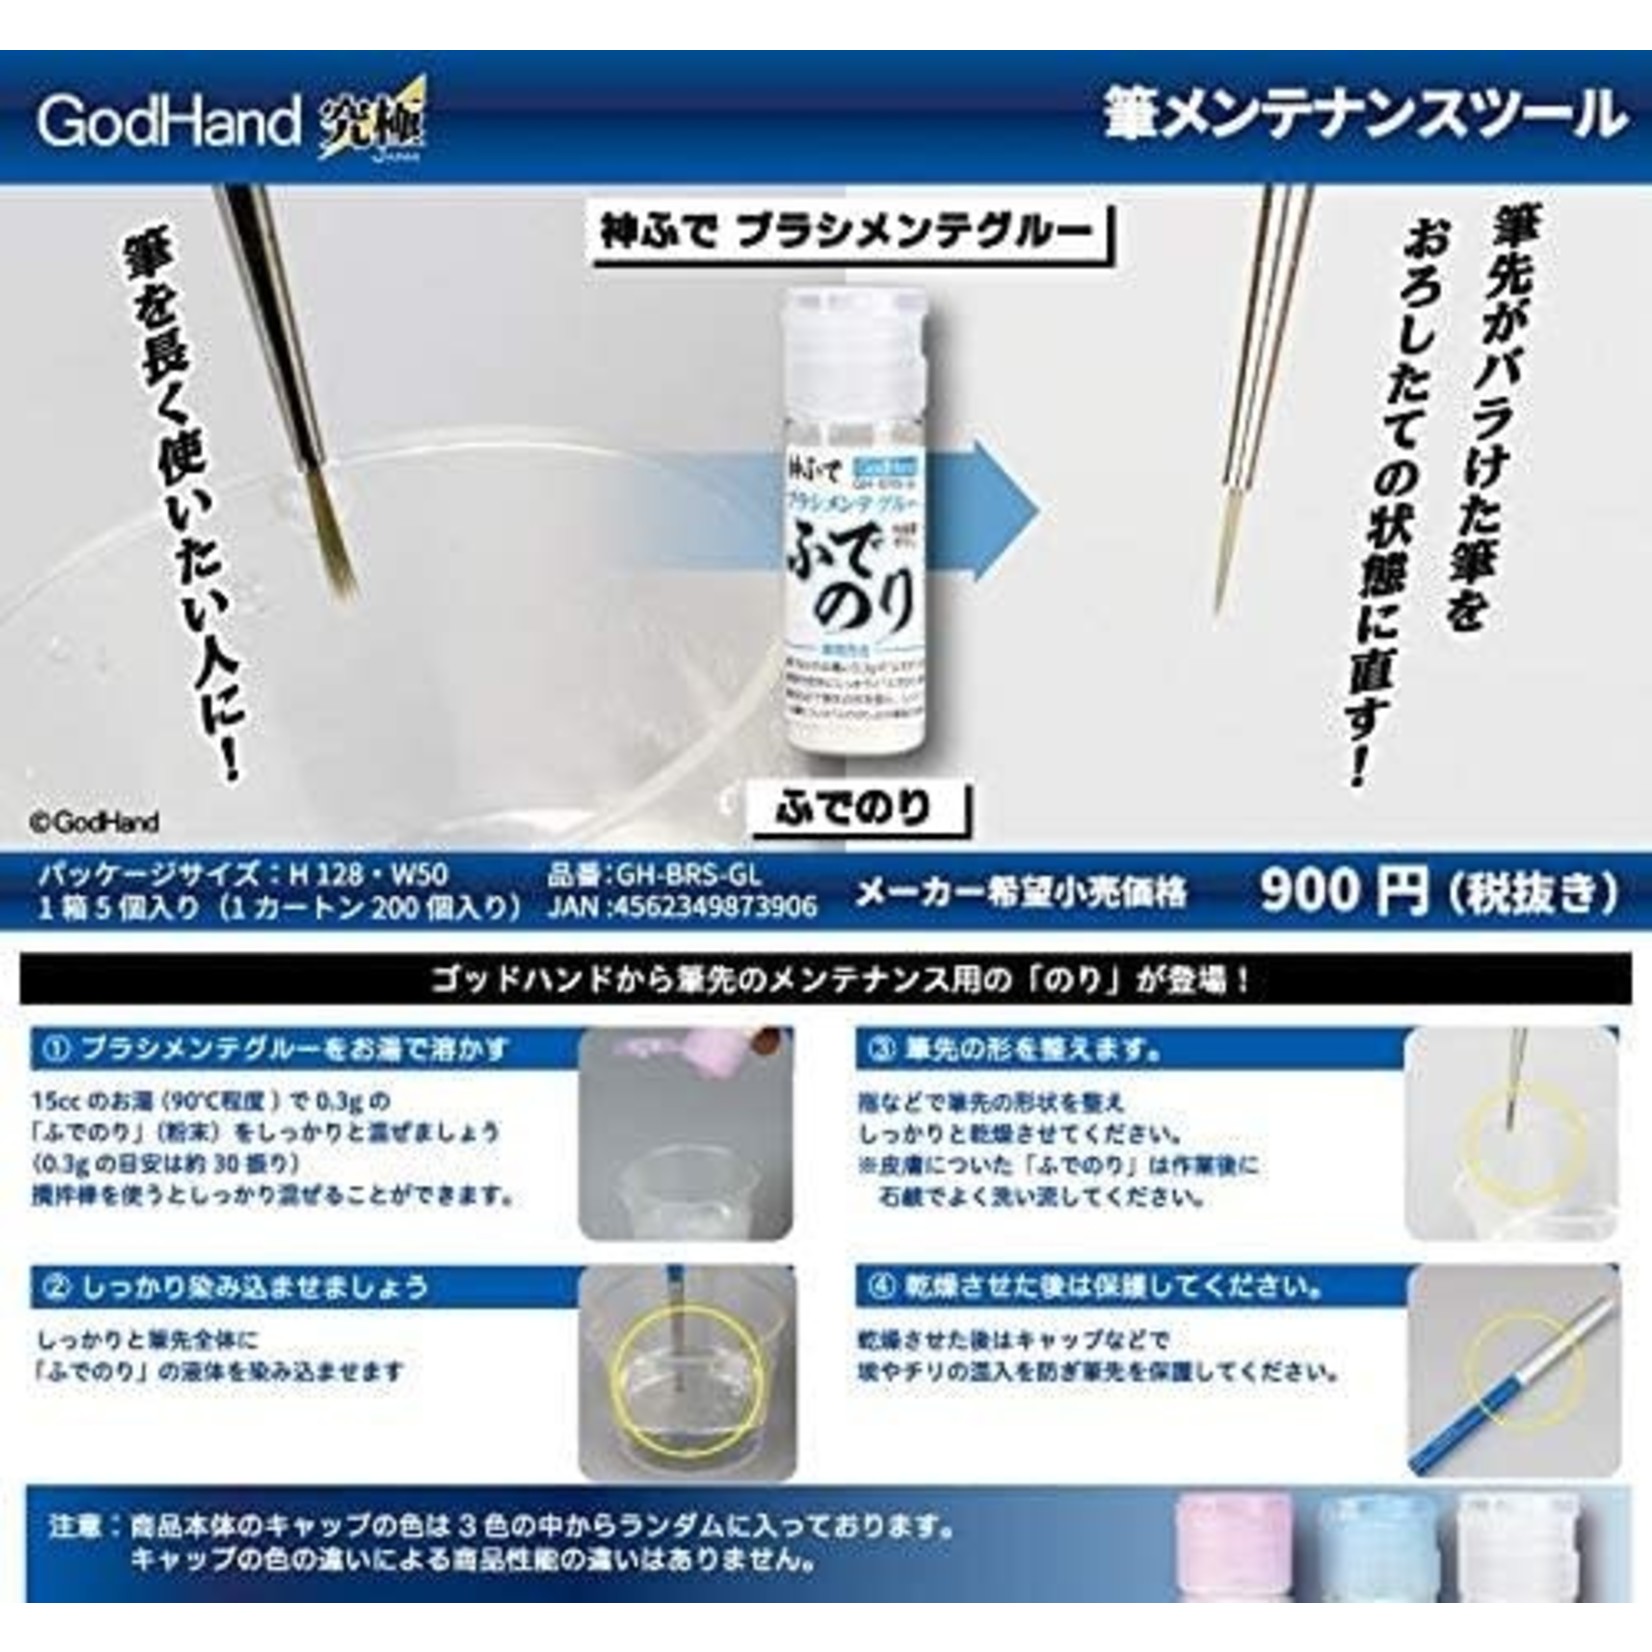 GodHand GodHand Brush Maintenance Starch 15ml